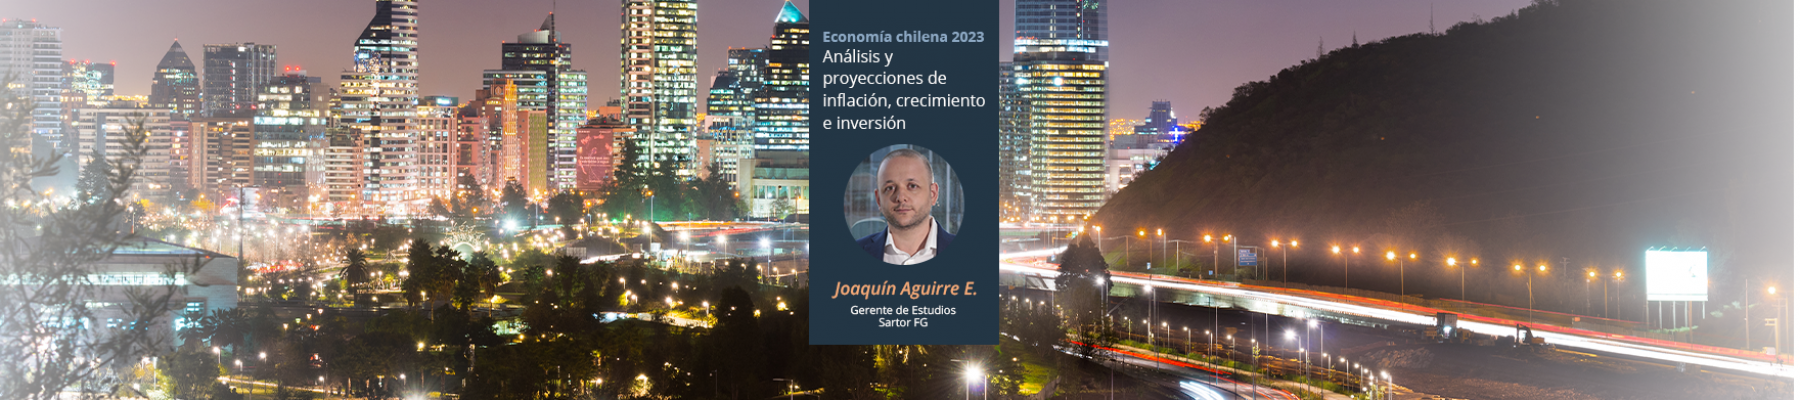 Economía chilena 2023: análisis y proyecciones de inflación, crecimiento e inversión